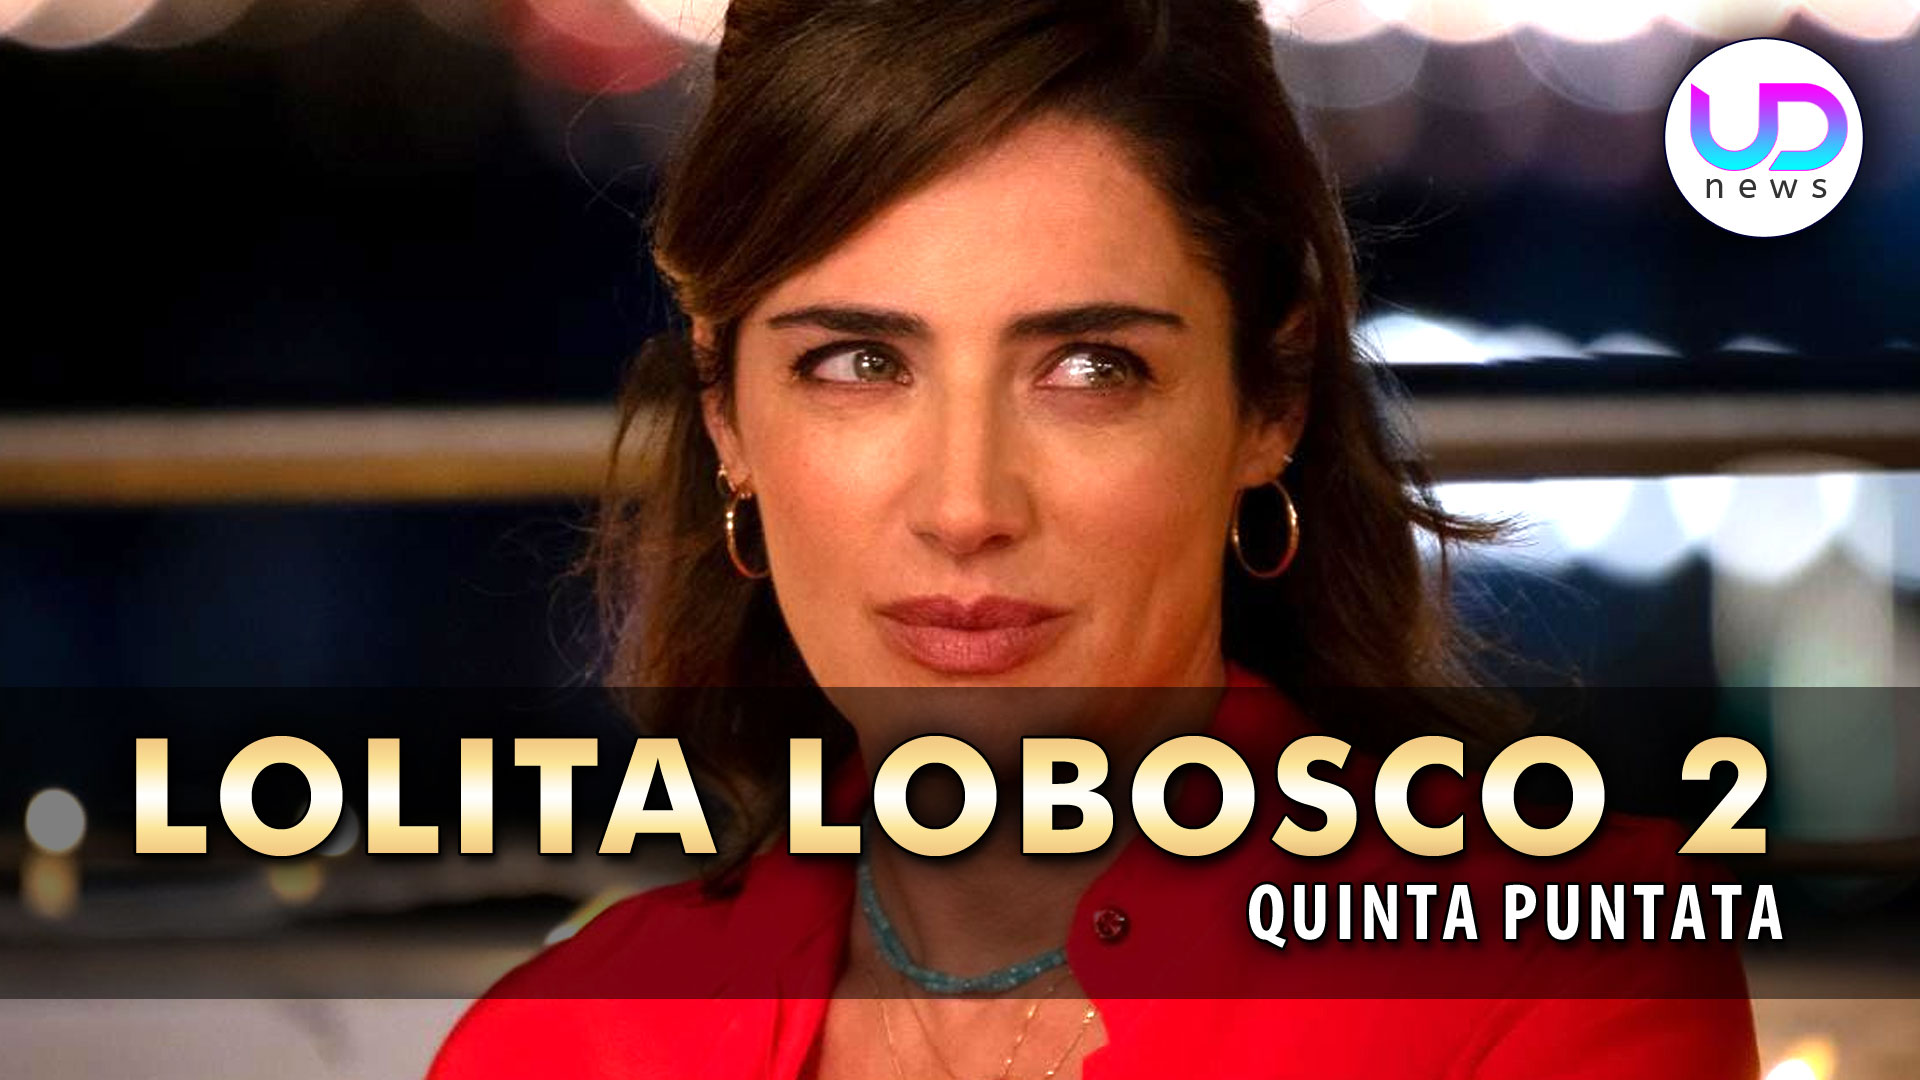 lolita-lobosco-2,-quinta-puntata:-lolita-sulle-tracce-di-un-serial-killer!-–-ud-news